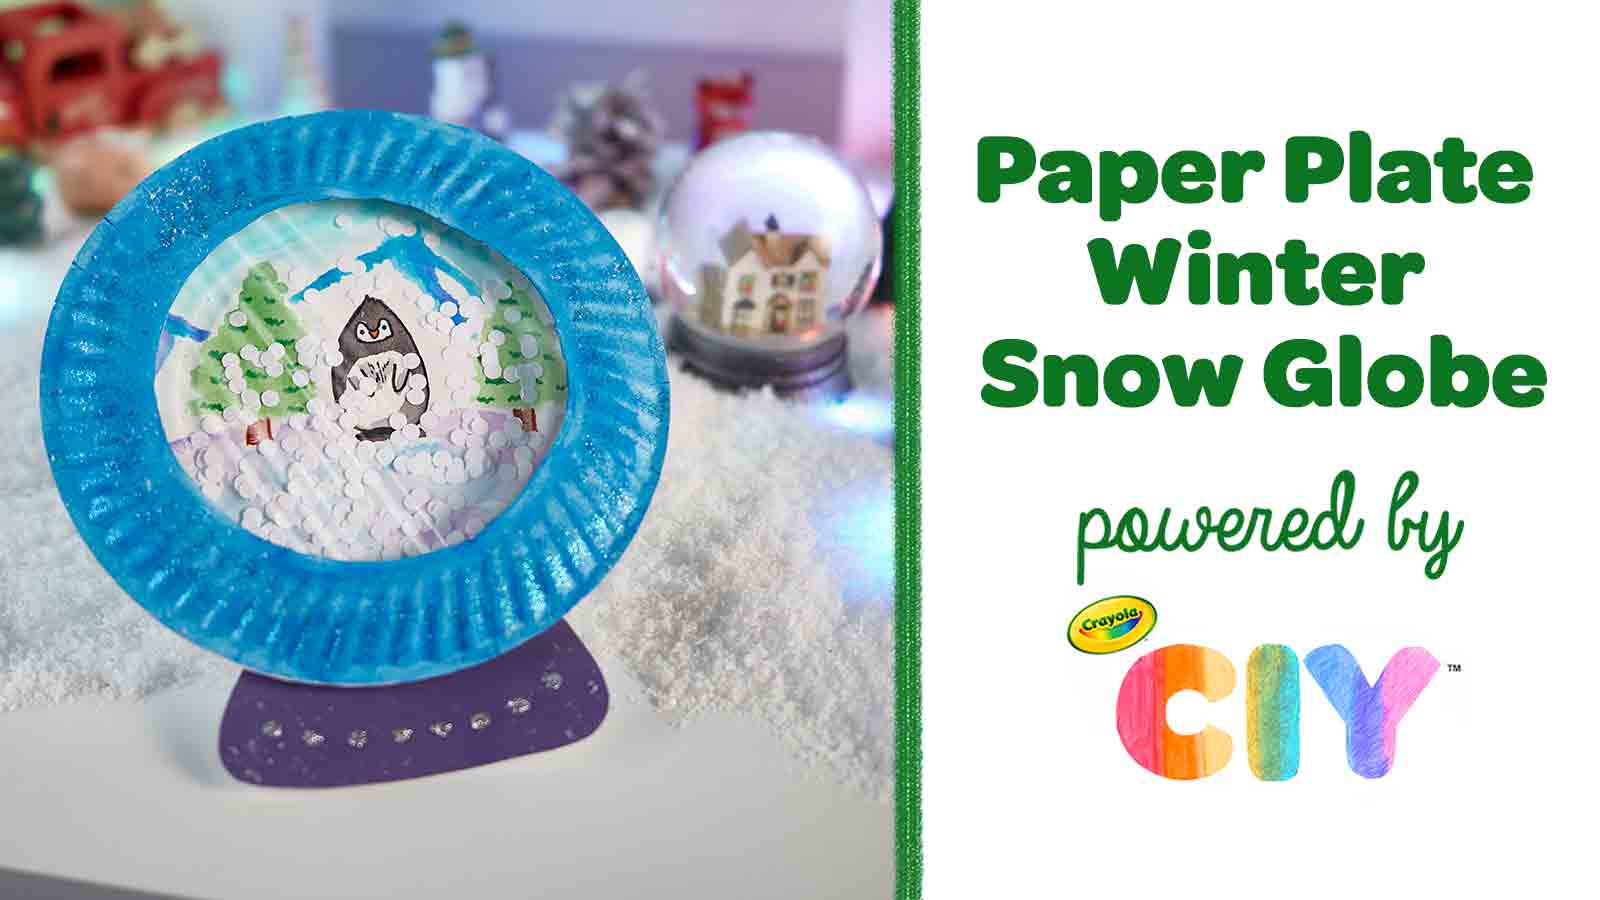 Homemade paper plate penguin snow globe on table with Paper Plate Winter Snow Globe powered by Crayola CIY